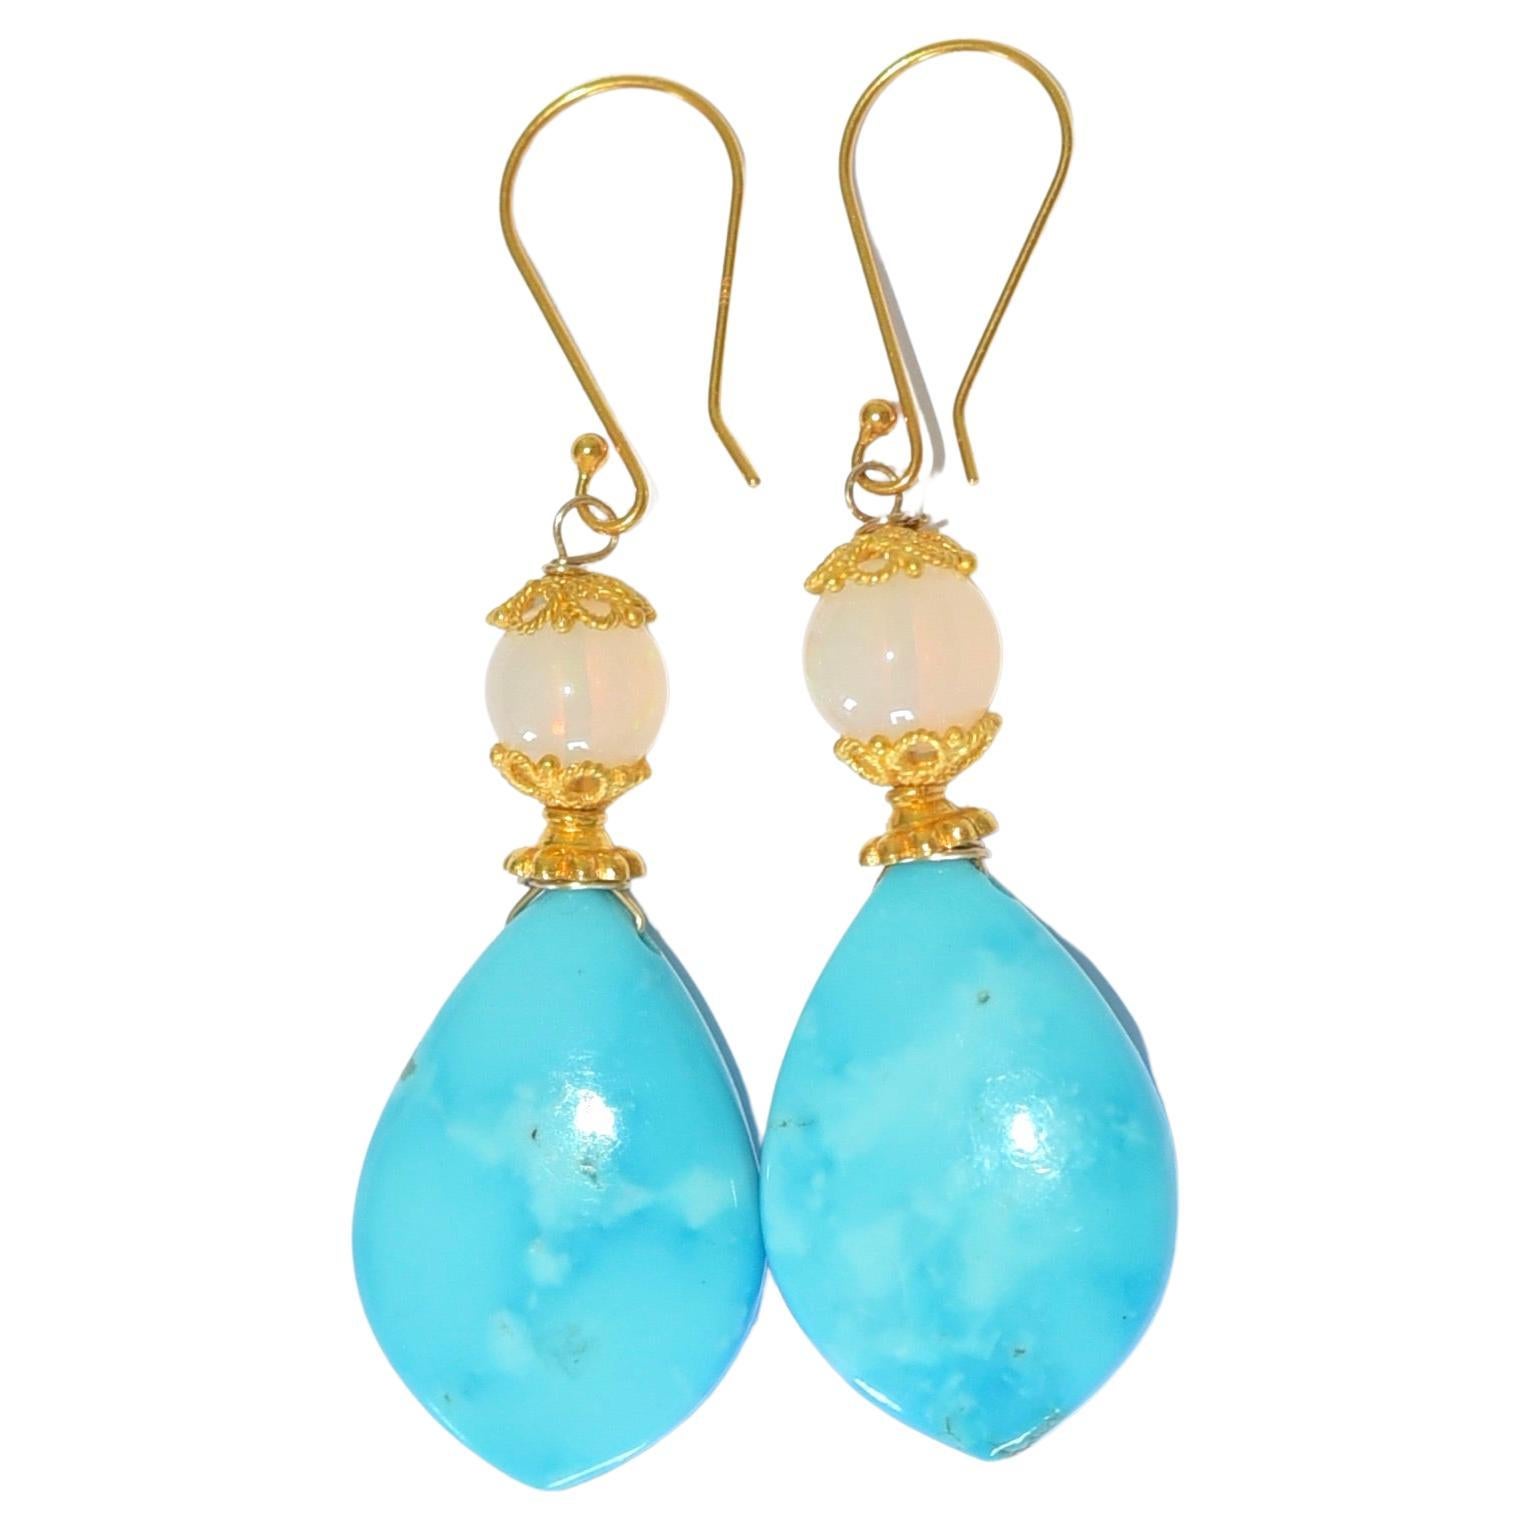 Kingman Turquoise, Opal Earrings in 18K Solid Yellow Gold